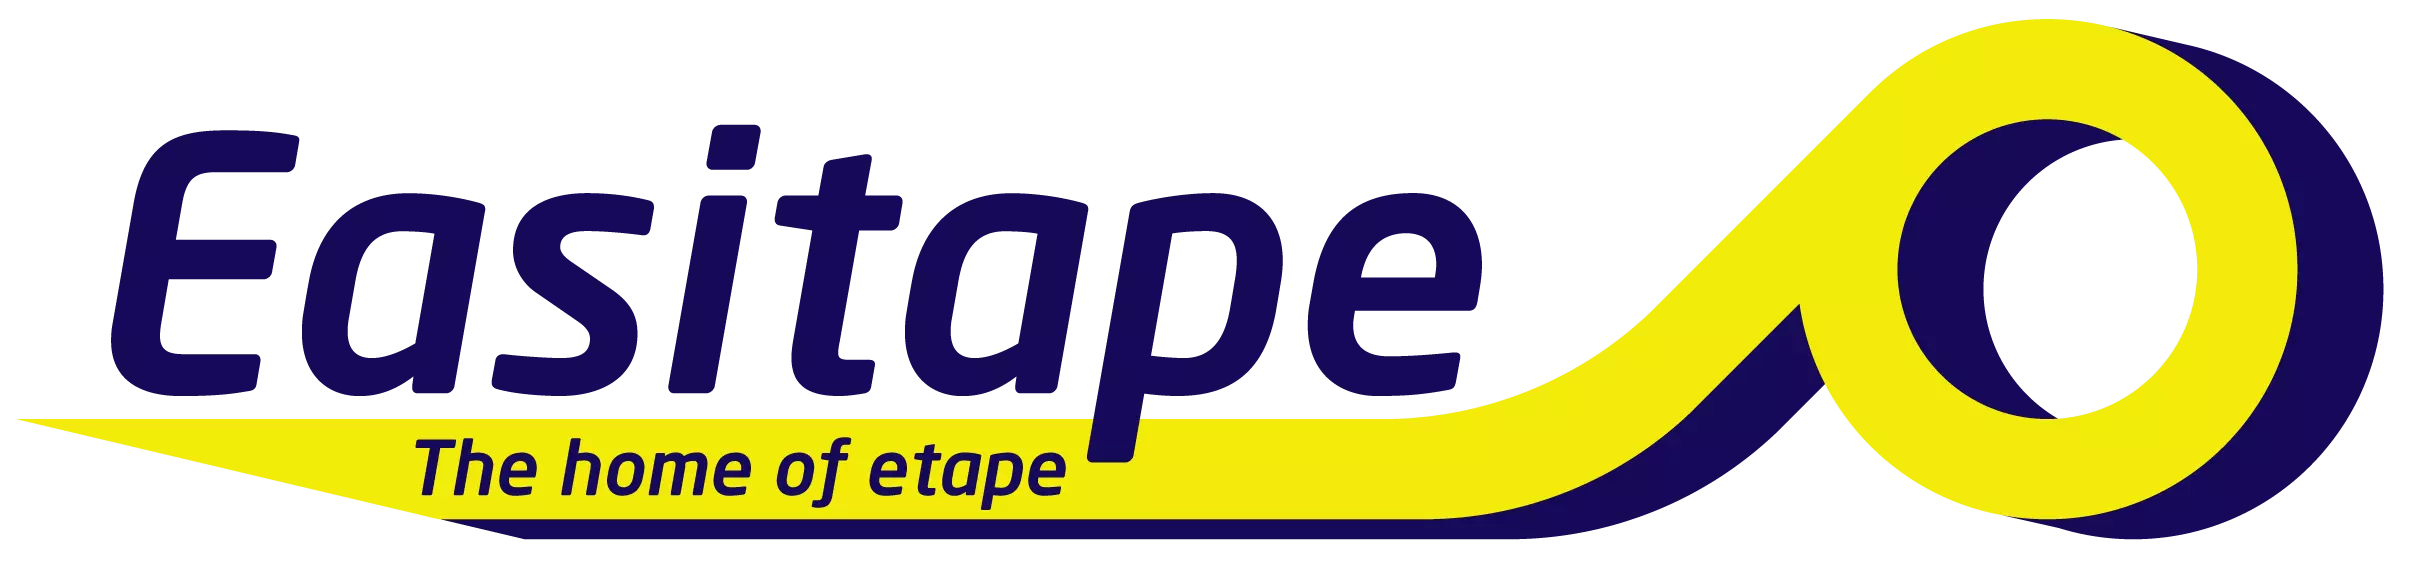 Easitape the home of etape logo